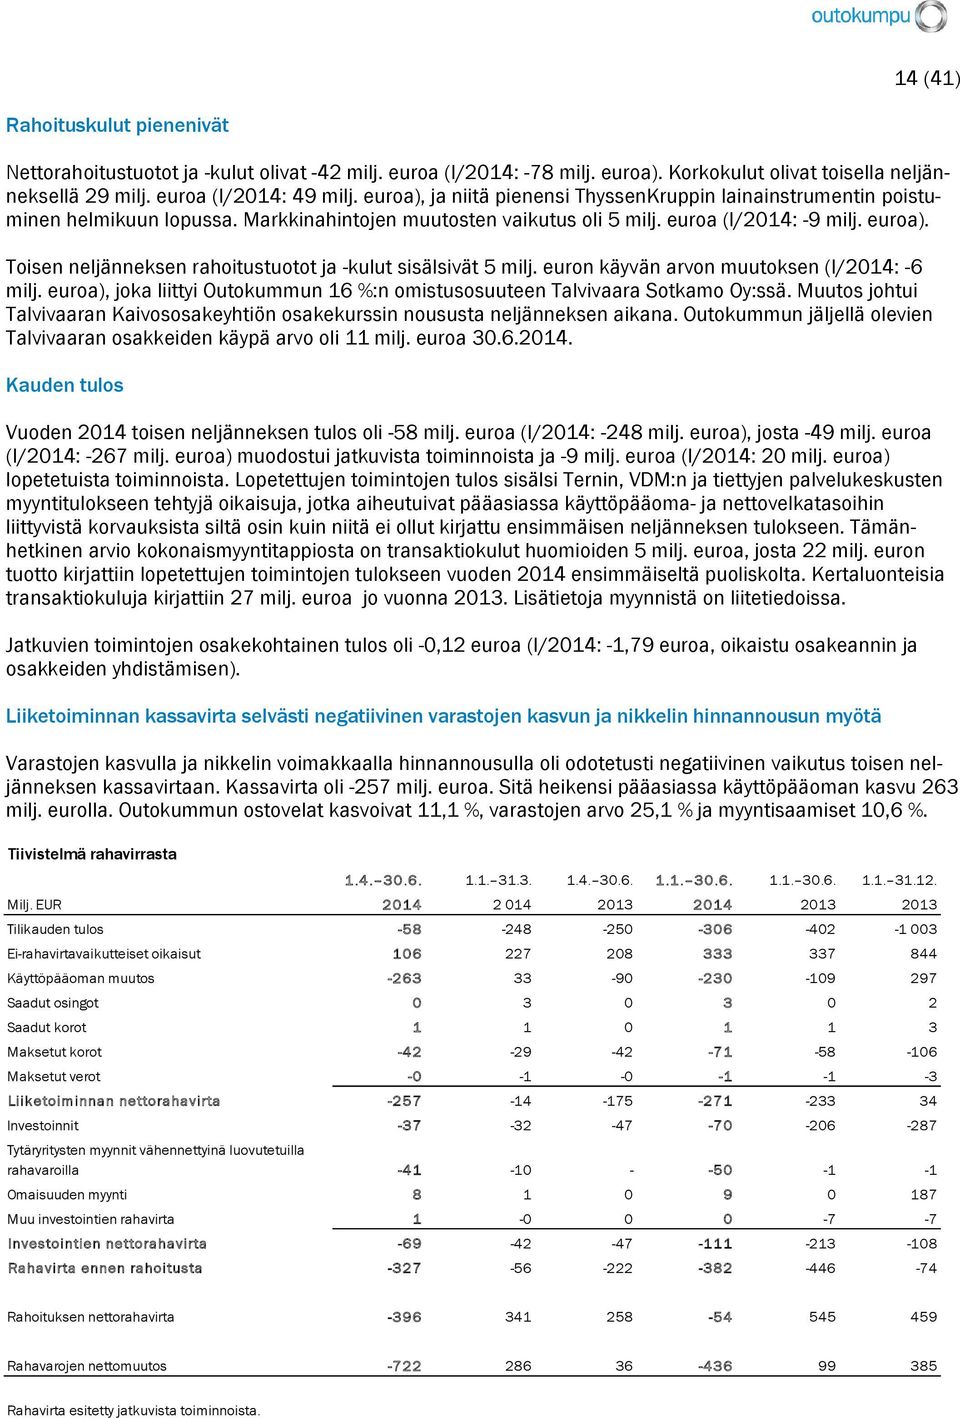 Toisen neljänneksen rahoitustuotot ja -kulut sisälsivät 5 milj. euron käyvän arvon muutoksen (I/2014: -6 milj. euroa), joka liittyi Outokummun 16 %:n omistusosuuteen Talvivaara Sotkamo Oy:ssä.